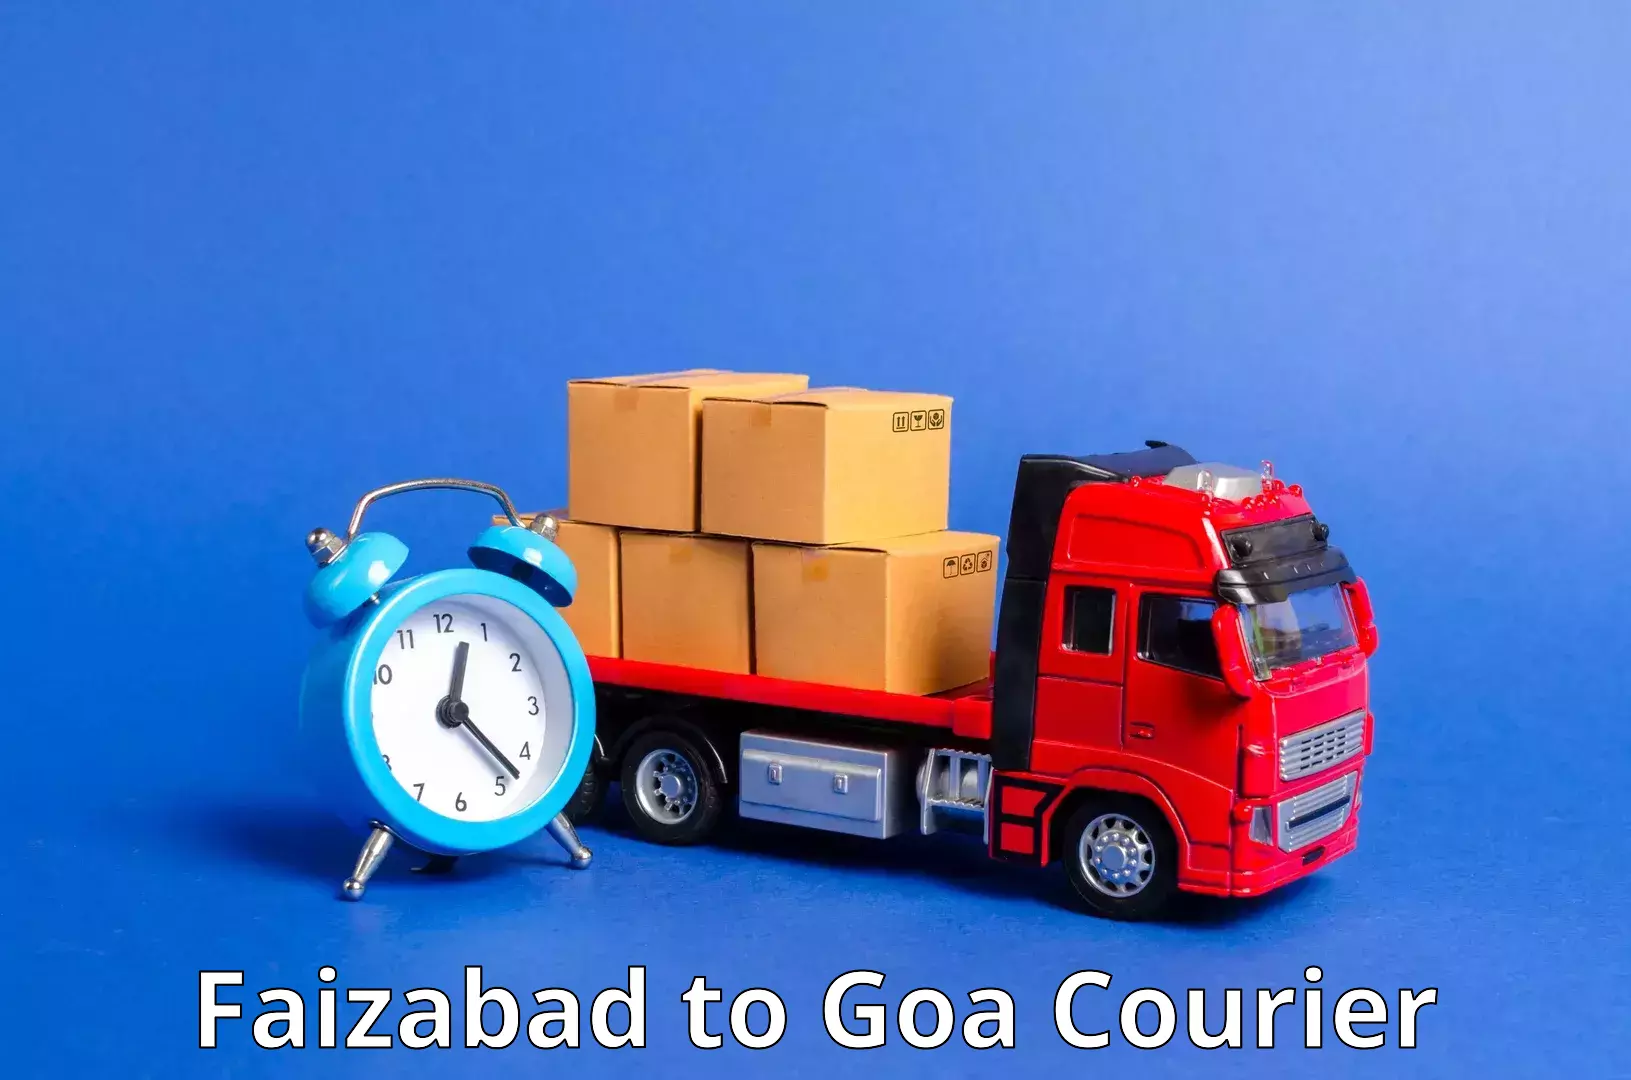 Courier service innovation Faizabad to Canacona